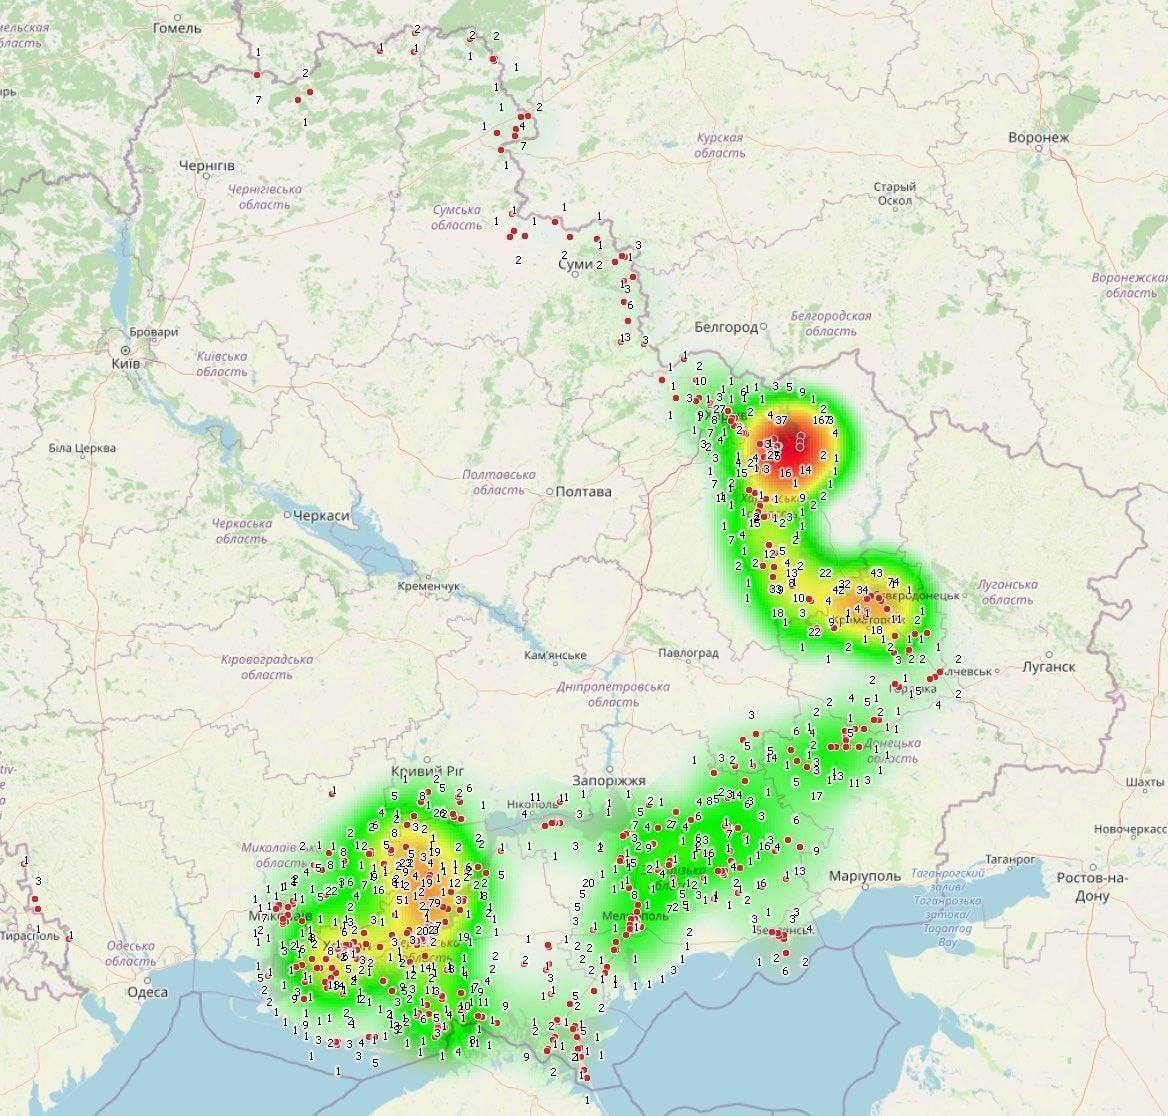 Так выглядит скопление абонентов российской мобильной связи на территории Украины (КАРТА)